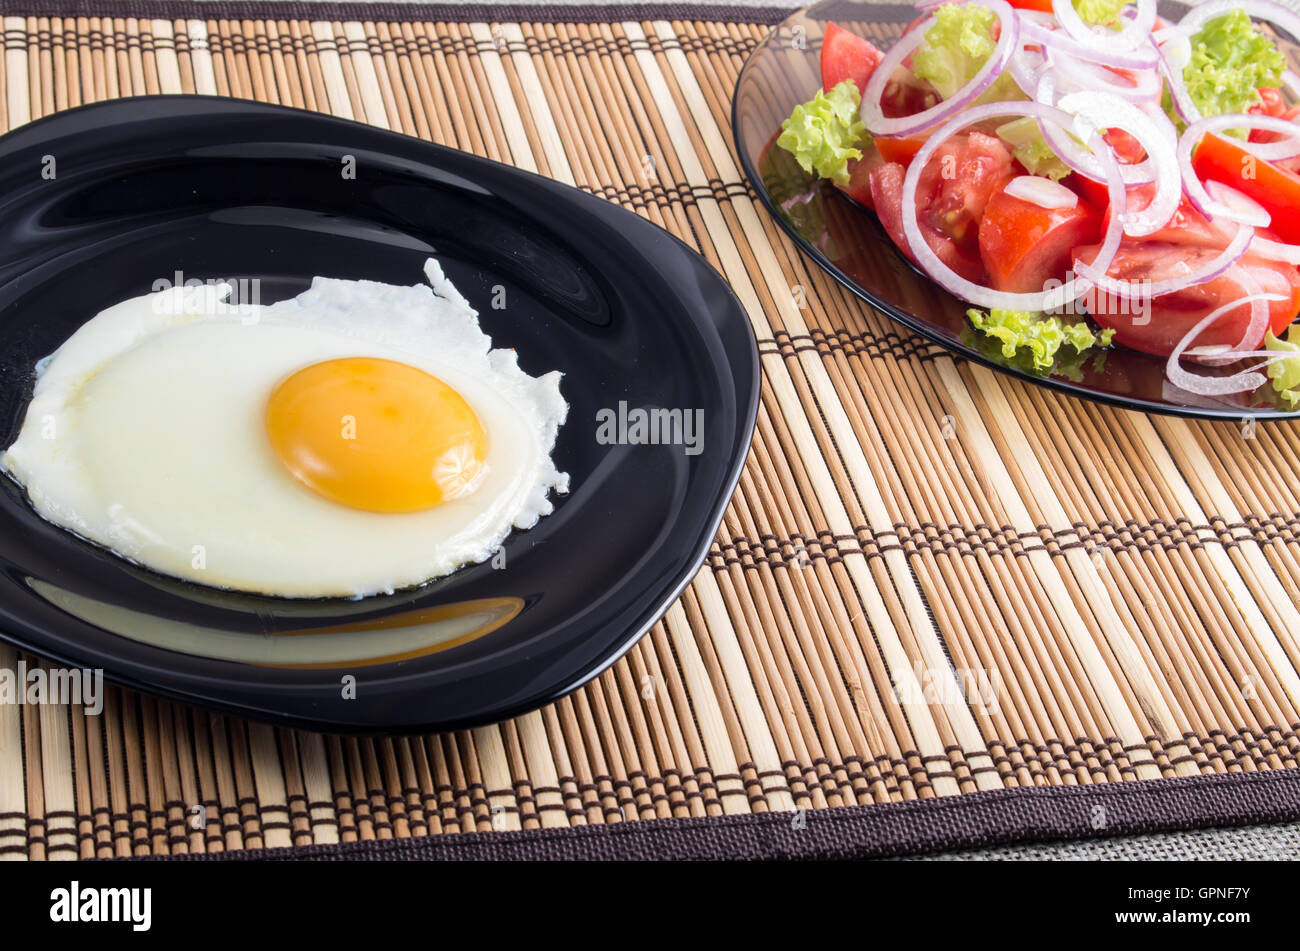 Vue rapprochée sur les petit-déjeuner fait maison d'œuf frit et salade de tomates fraîches sur un tapis à rayures Banque D'Images